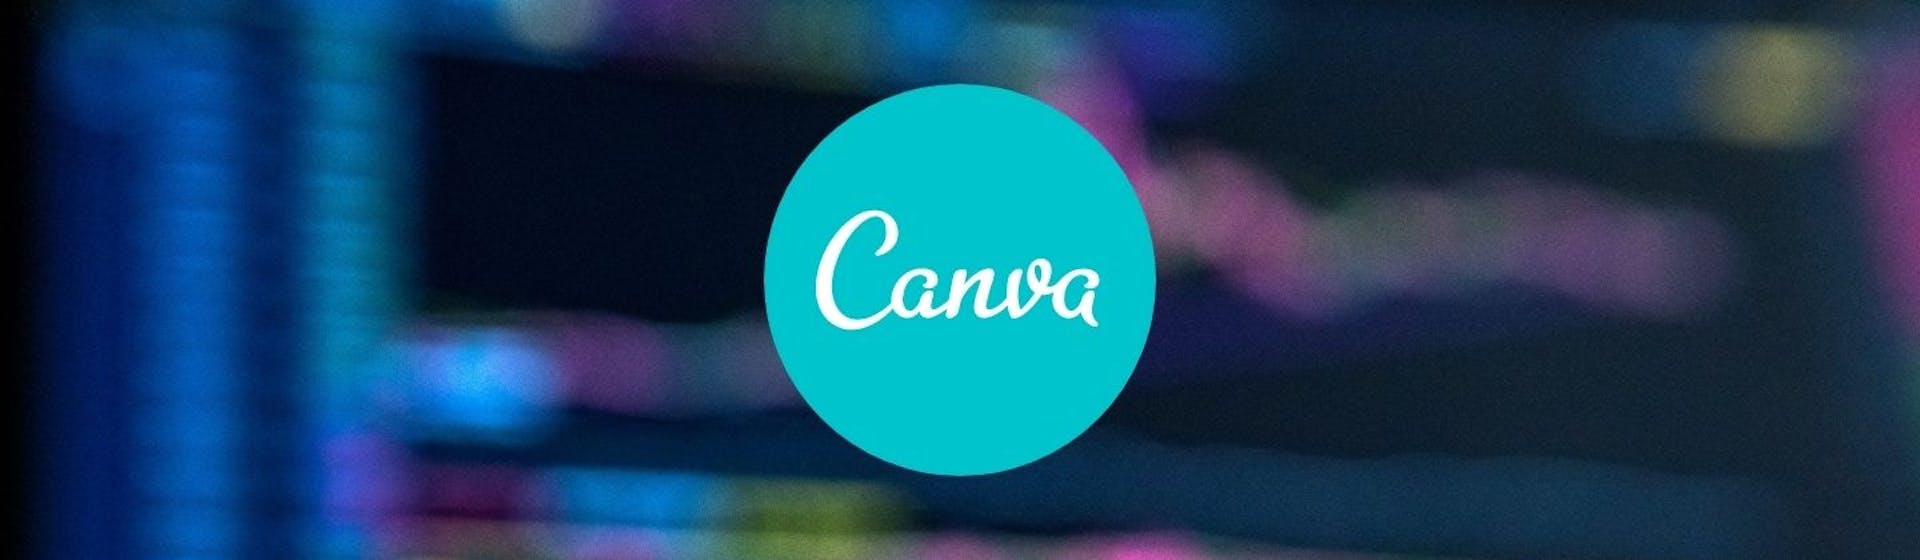 Aprende qué es Canva, la plataforma de diseño gráfico gratuita para los no diseñadores